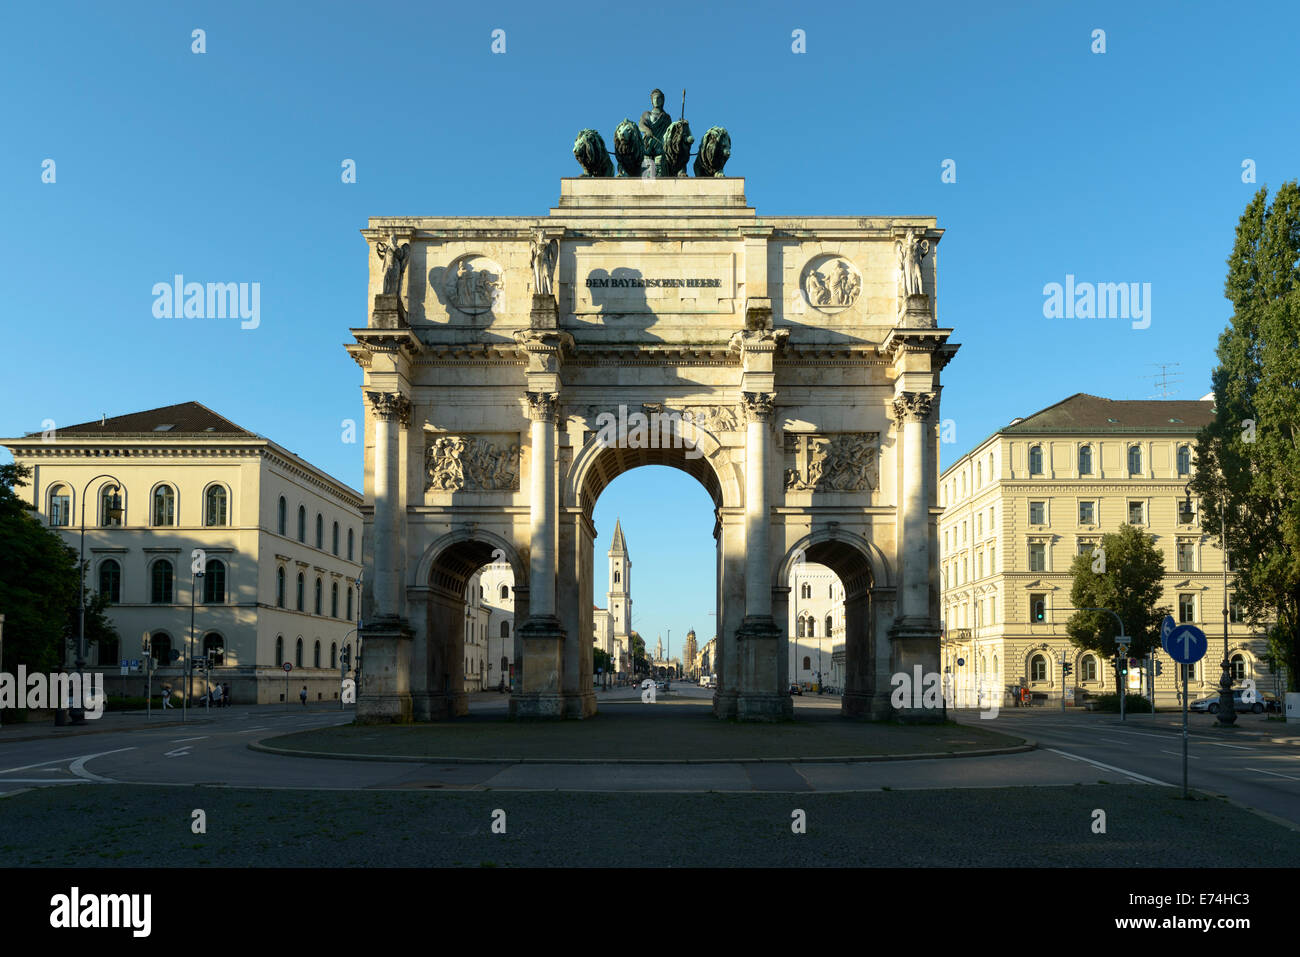 Siegestor, Victory Gate, Ludwigstrasse, Munich Stock Photo - Alamy